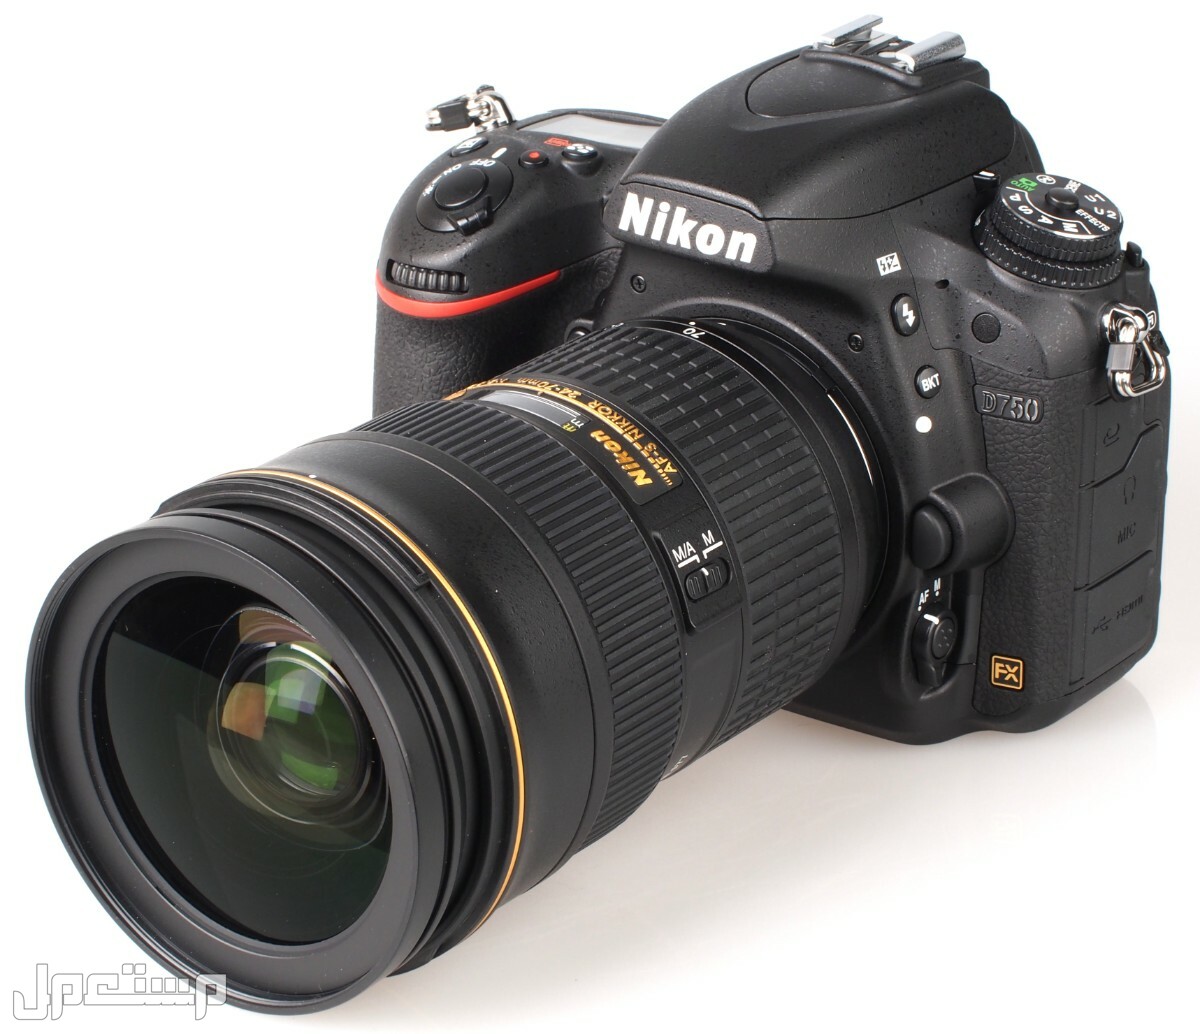 مواصفات ومميزات وأسعار أفضل أنواع كاميرات نيكون للمحترفين في الجزائر كاميرا Nikon D750